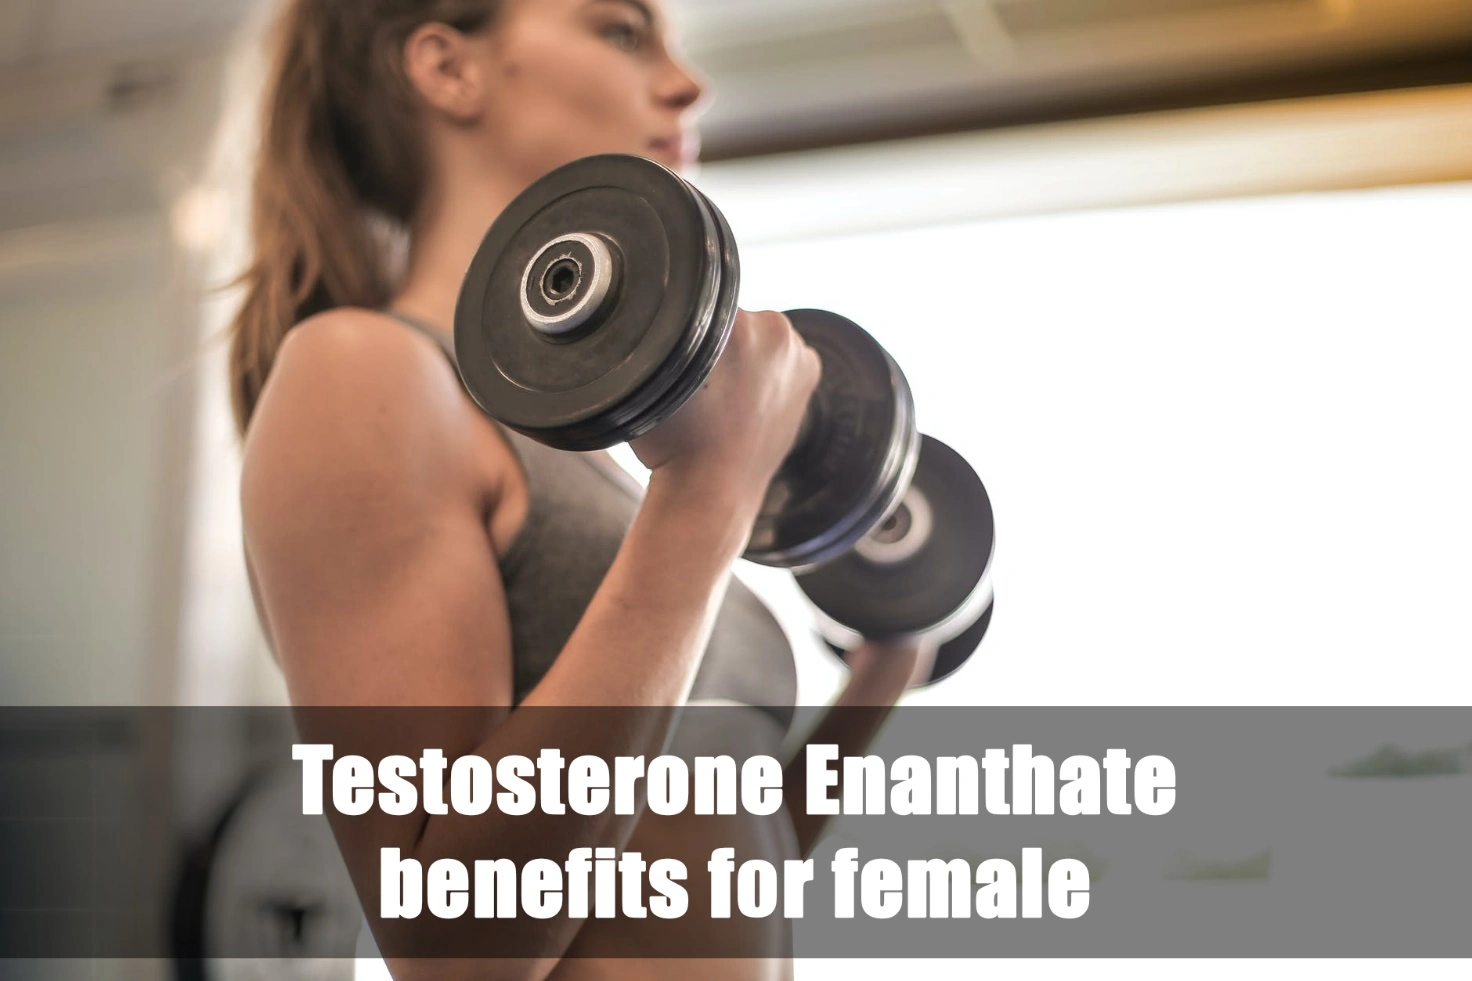 Benefici del testosterone enantato per le donne